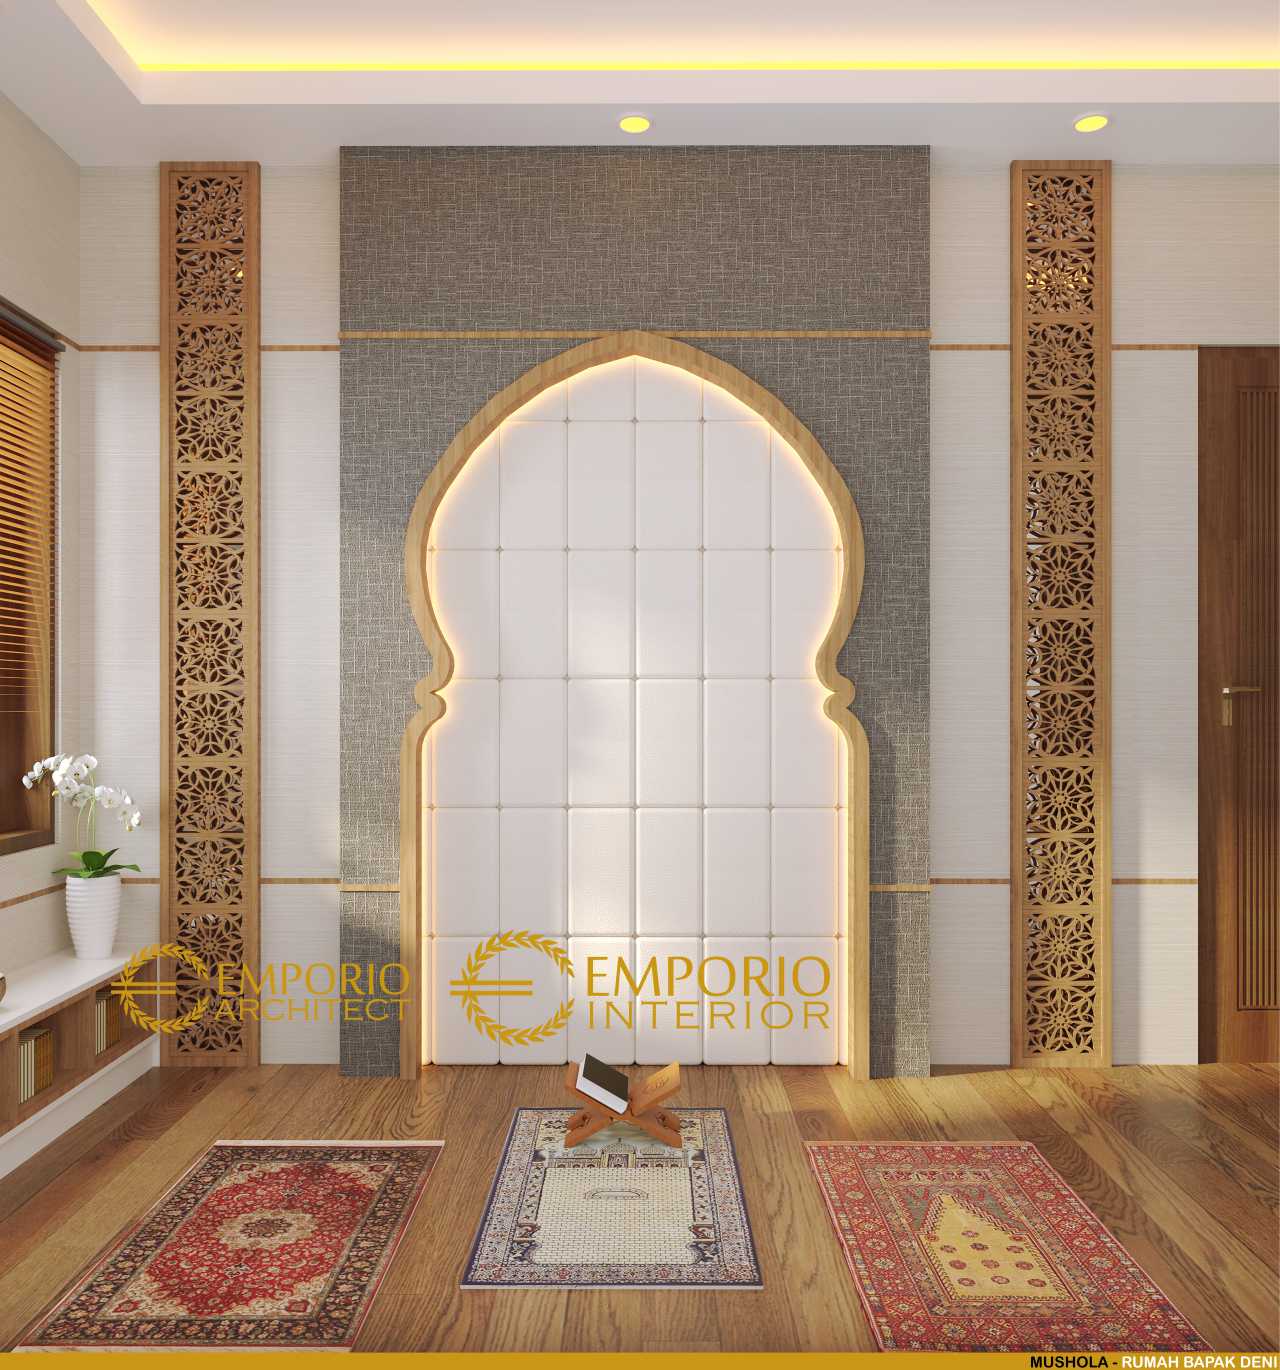 15 Desain Interior Musholla Pada Rumah Berkonsep Islami (Part 2) - Blog